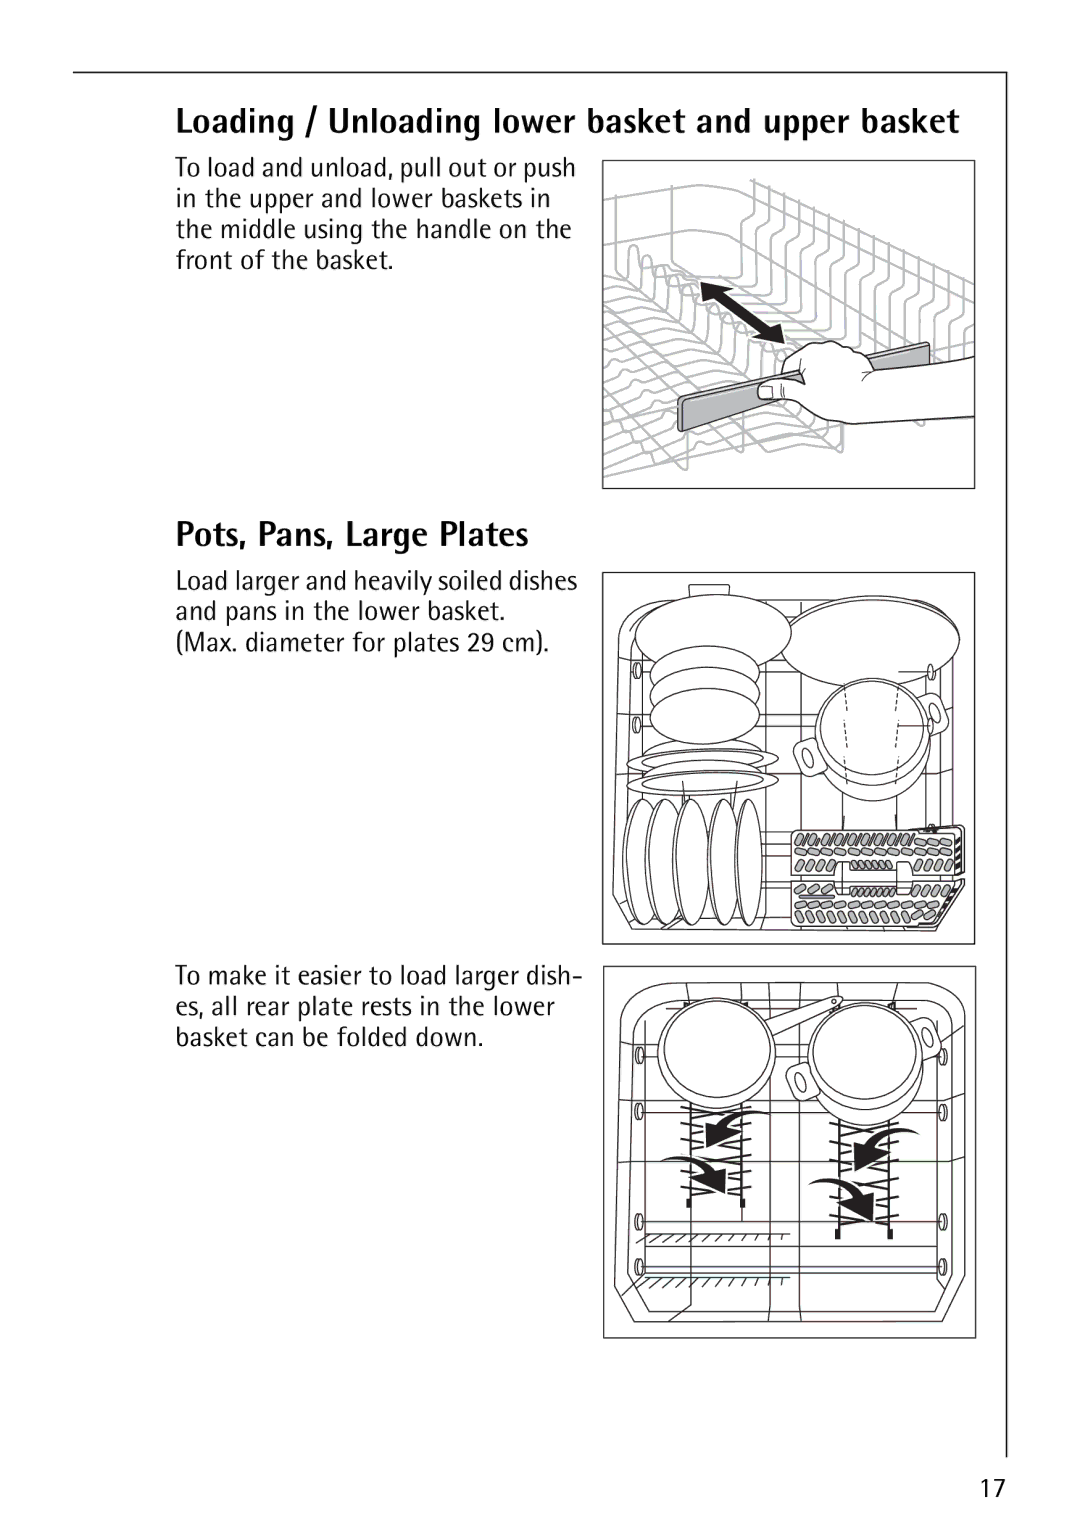 Electrolux FAVORIT 86070i manual Pots, Pans, Large Plates, Loading / Unloading lower basket and upper basket 